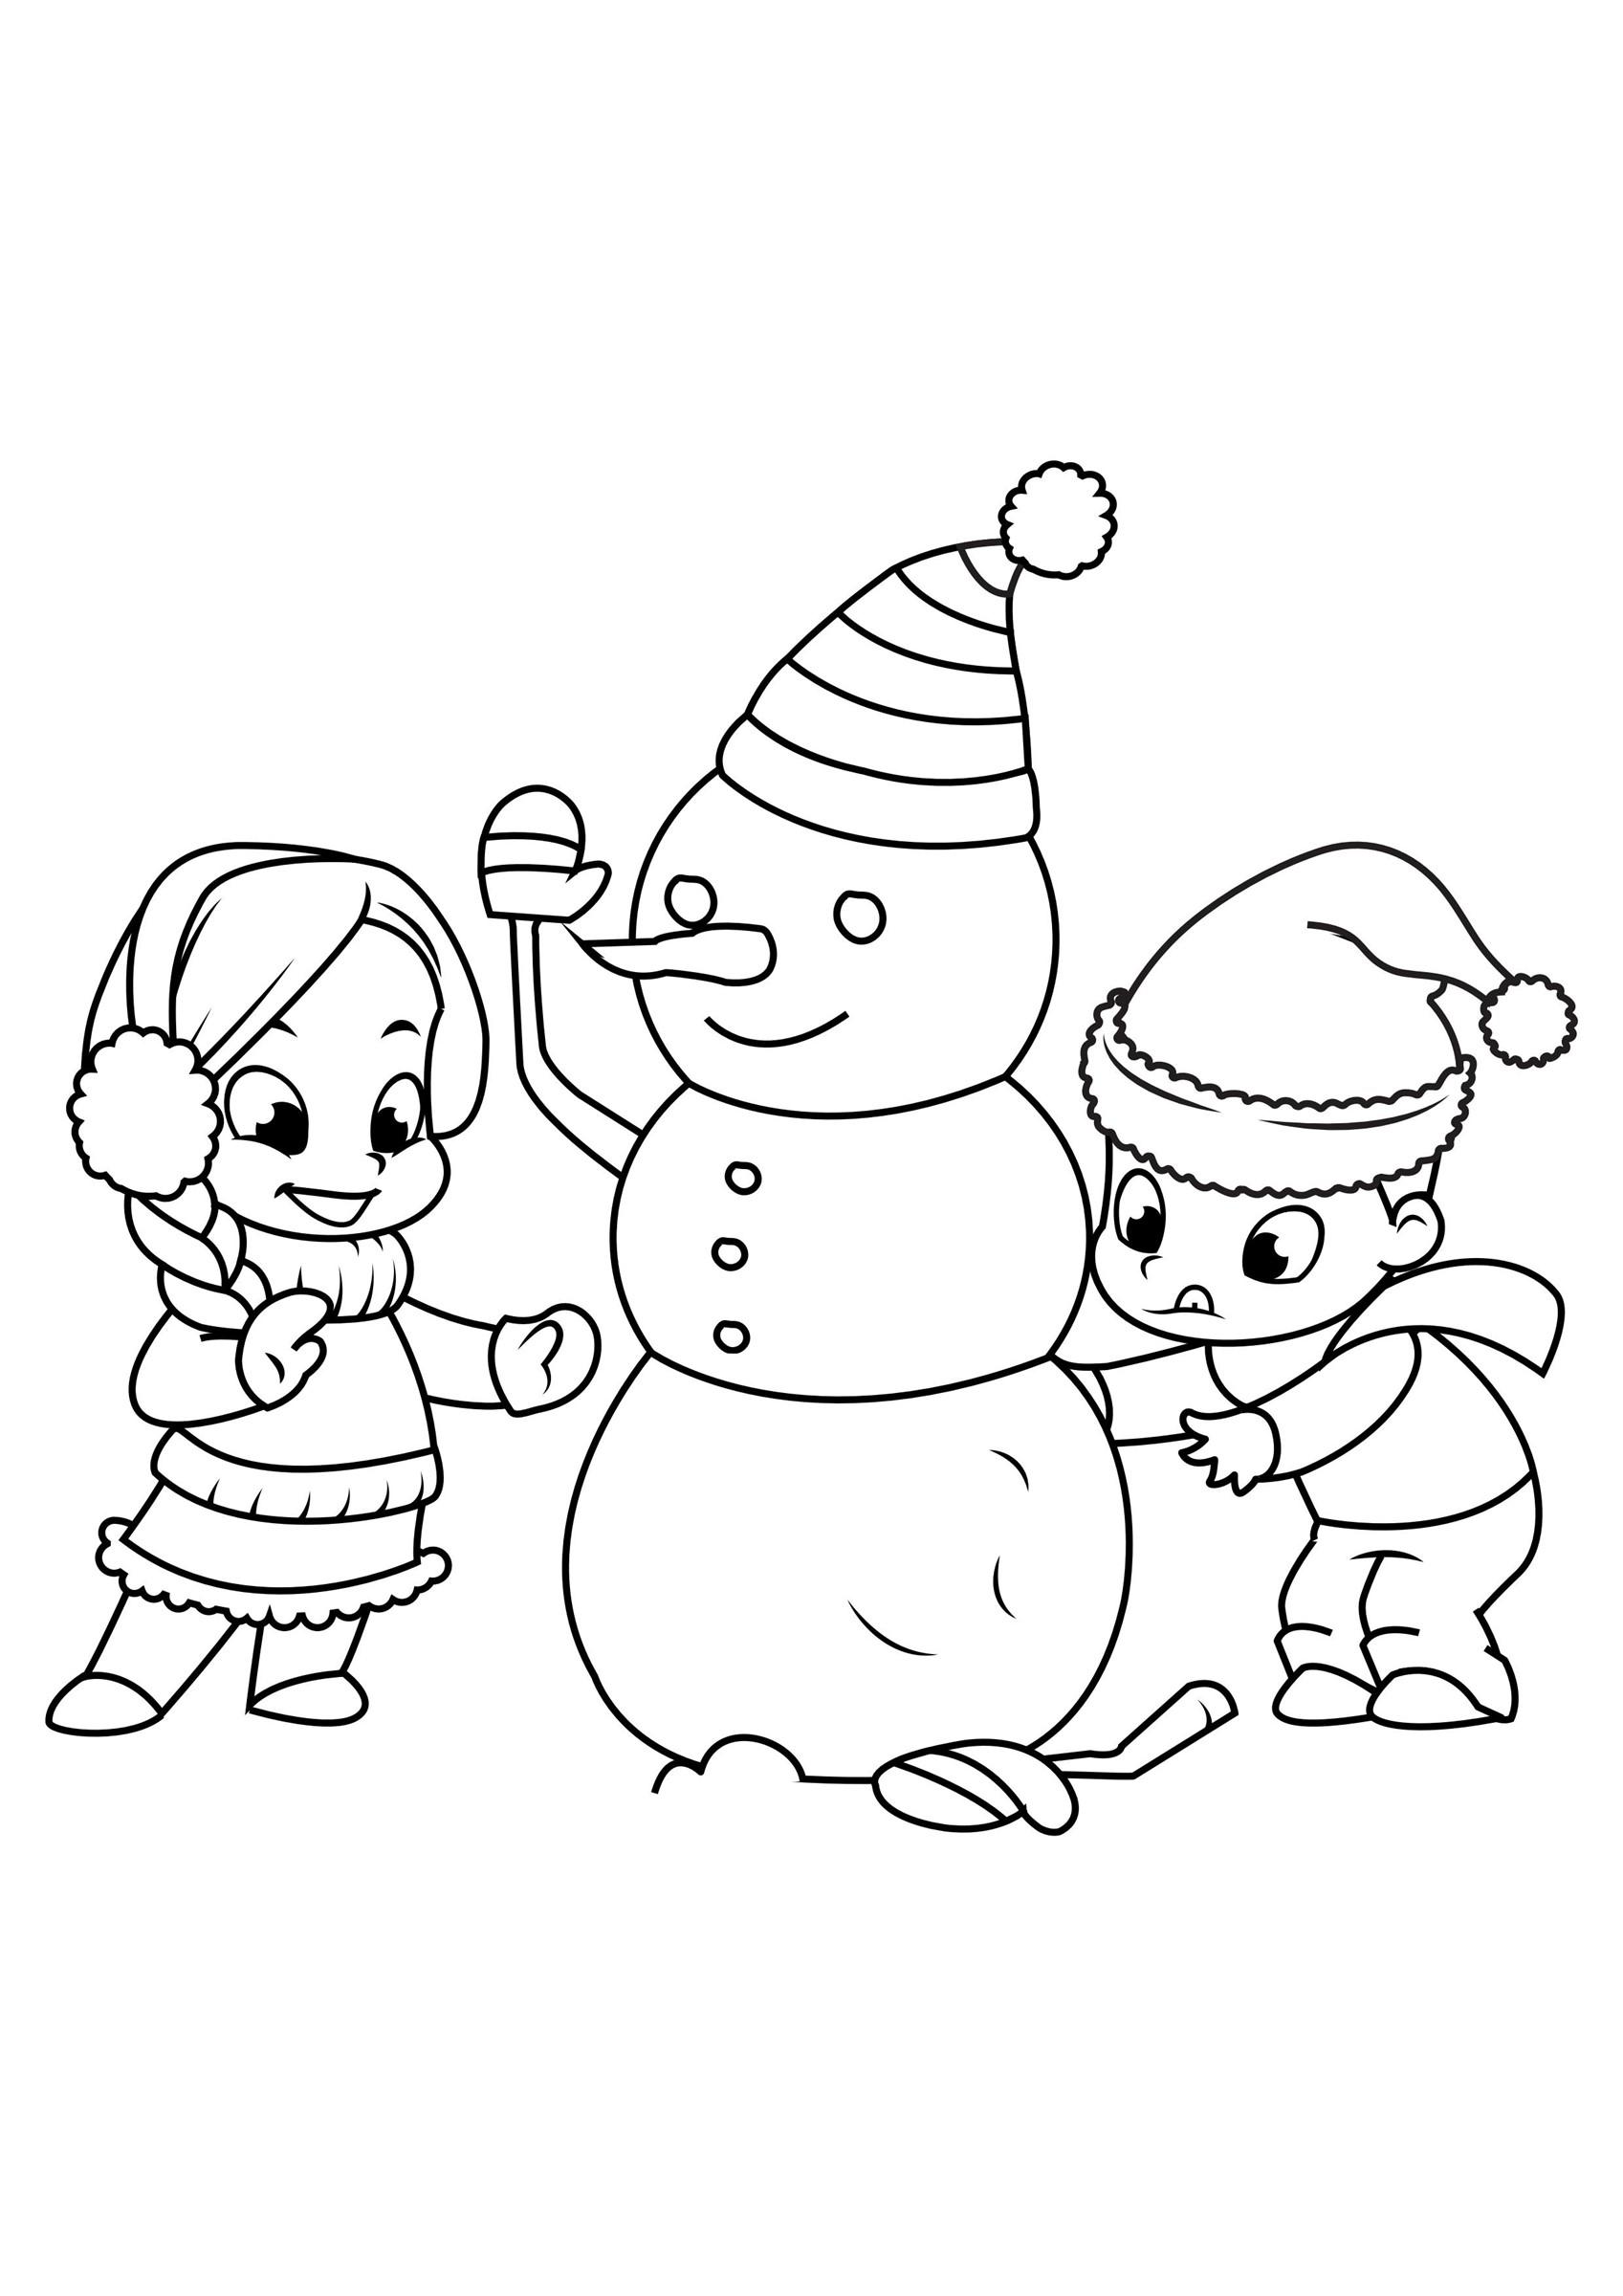 Página para colorir brincando com o boneco de neve